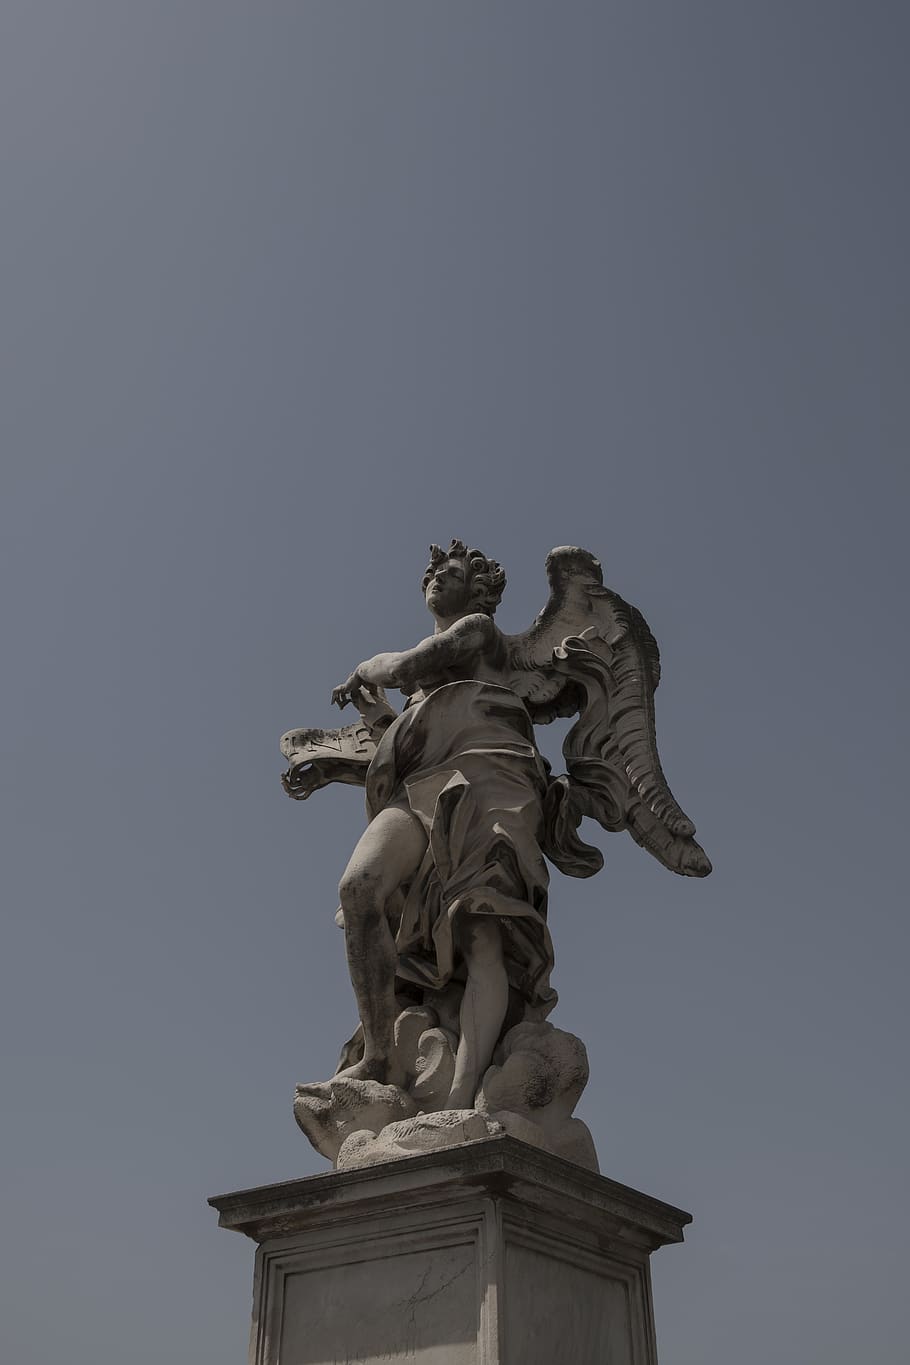 italy, rome, p.za pia/castel s. angelo, blue, sky, dramatic